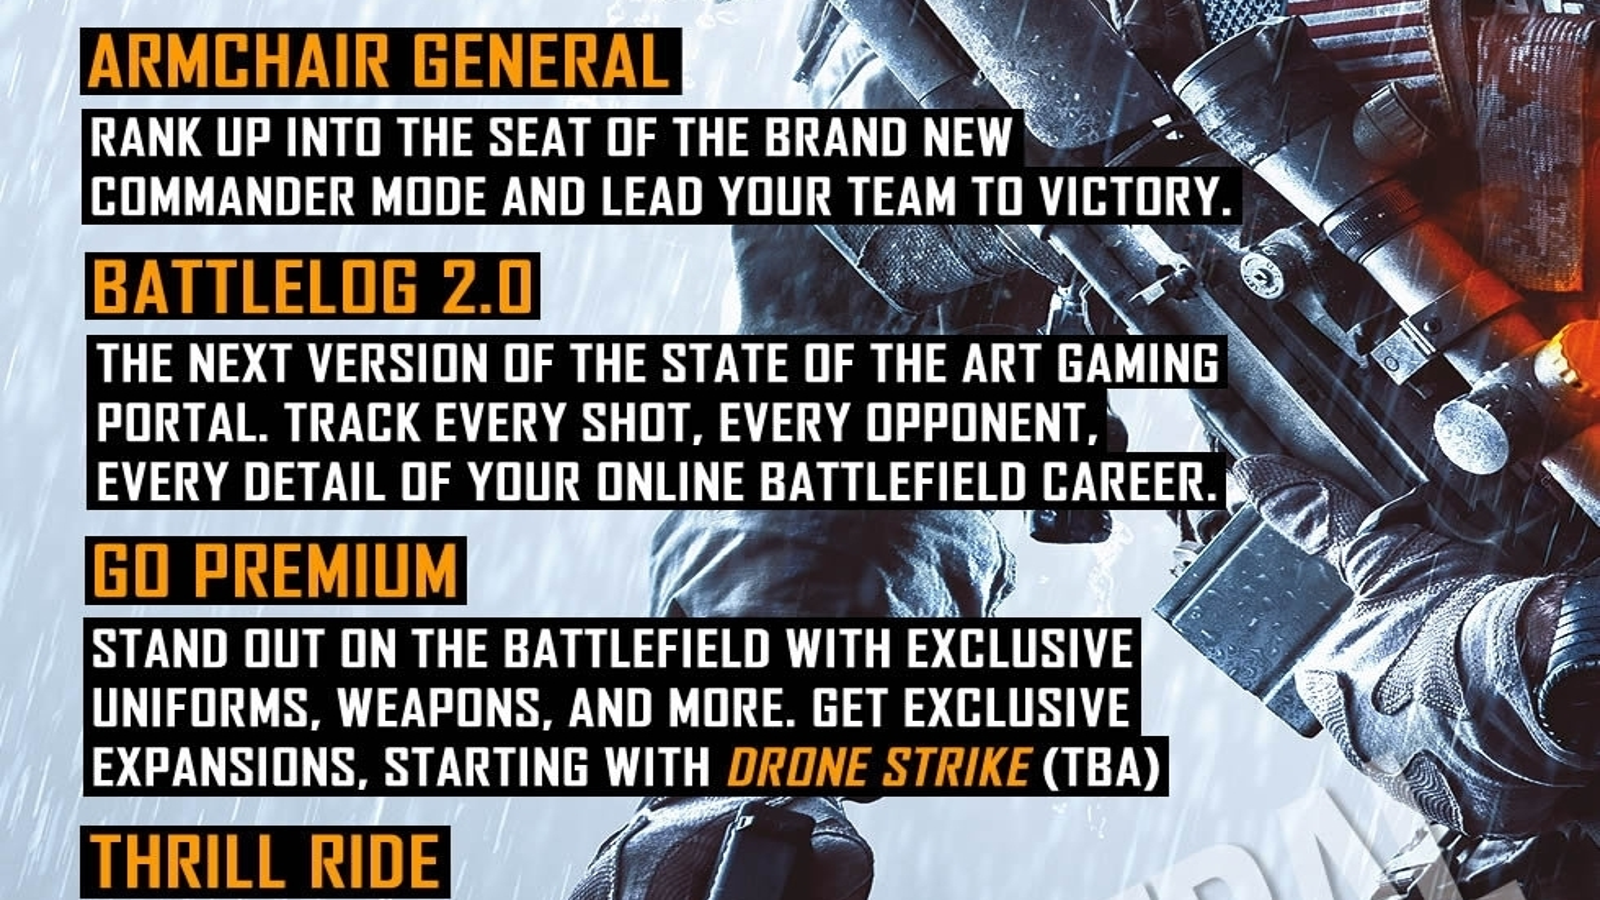 Battlefield 4's Battlelog gets an update